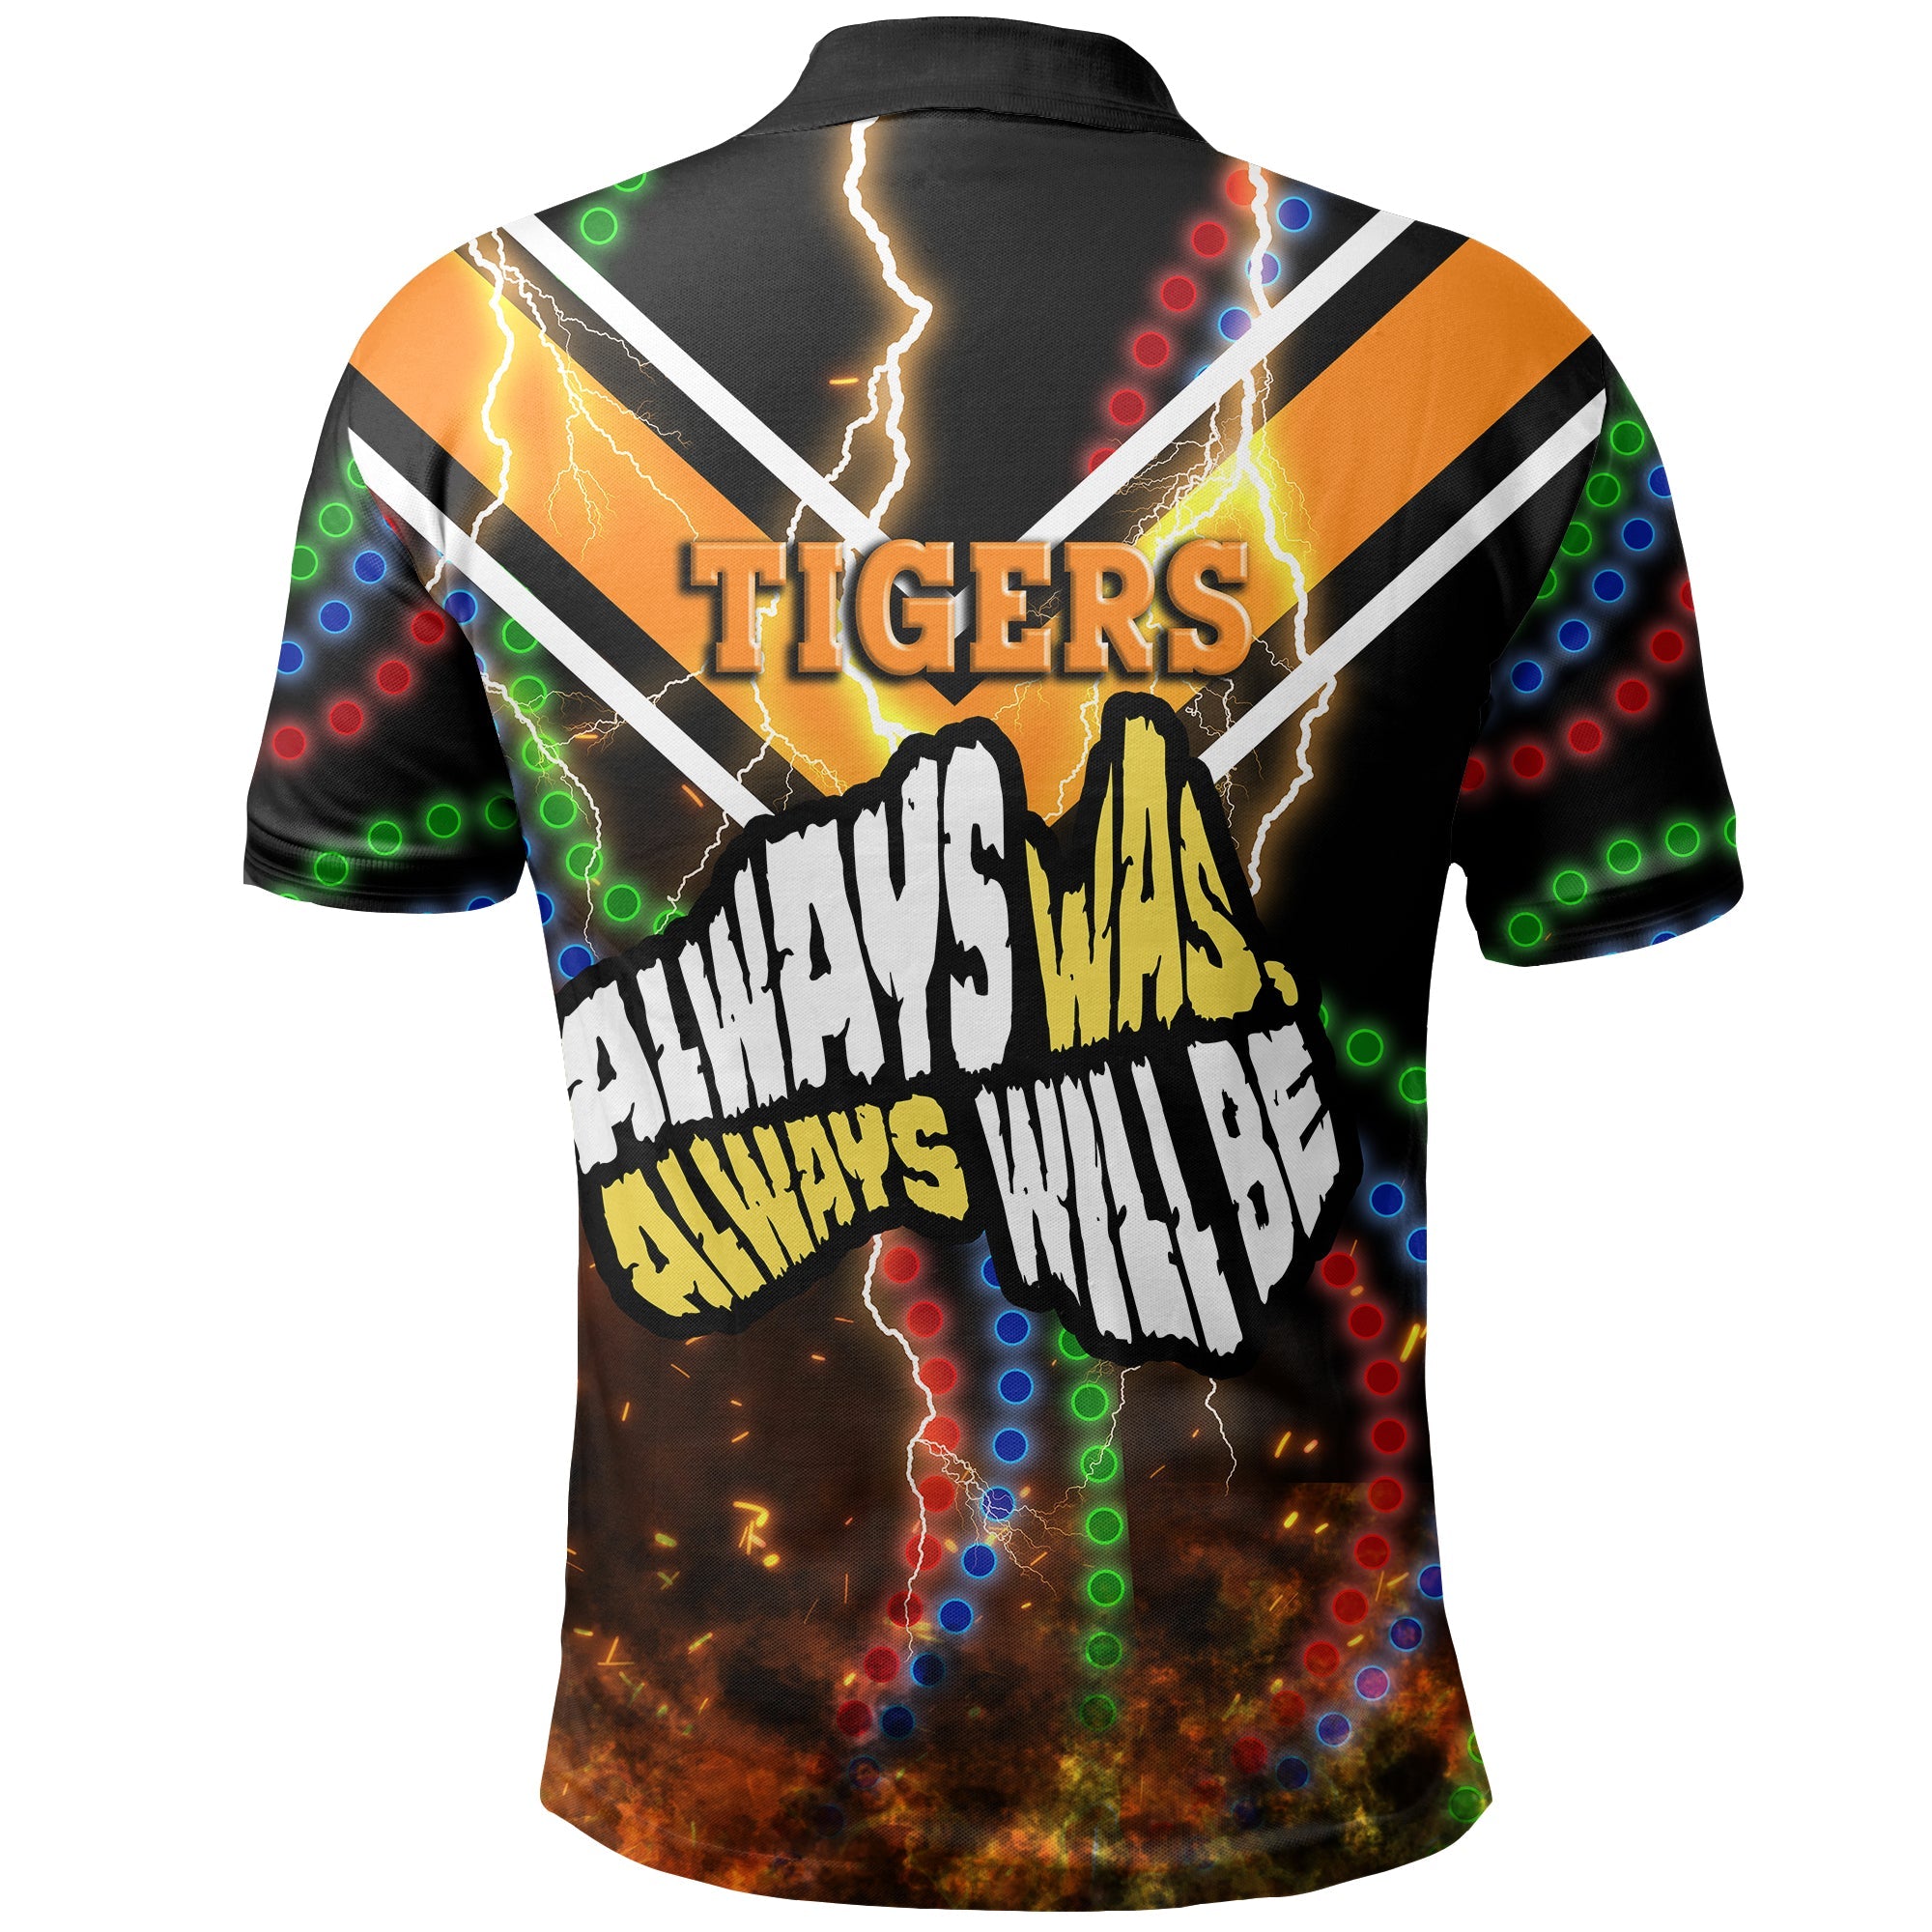 wests-tigers-naidoc-week-polo-shirt-version-aboriginal-tiger-3d